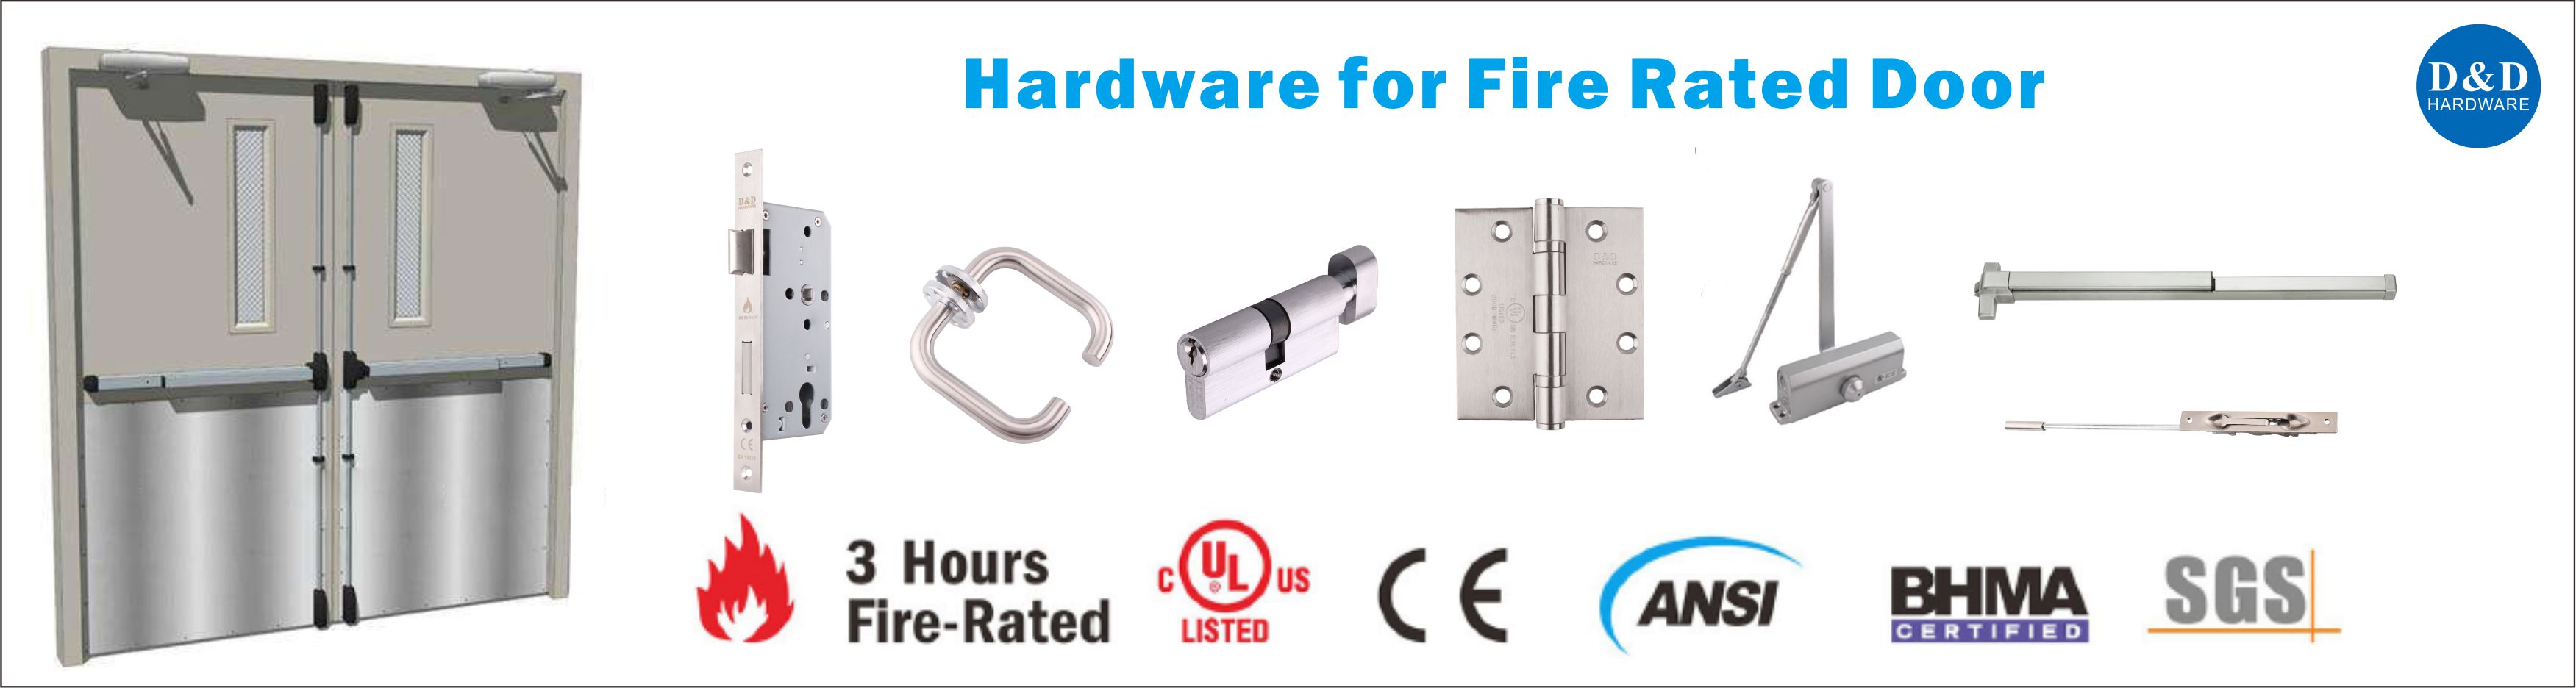 fire rated door hardware